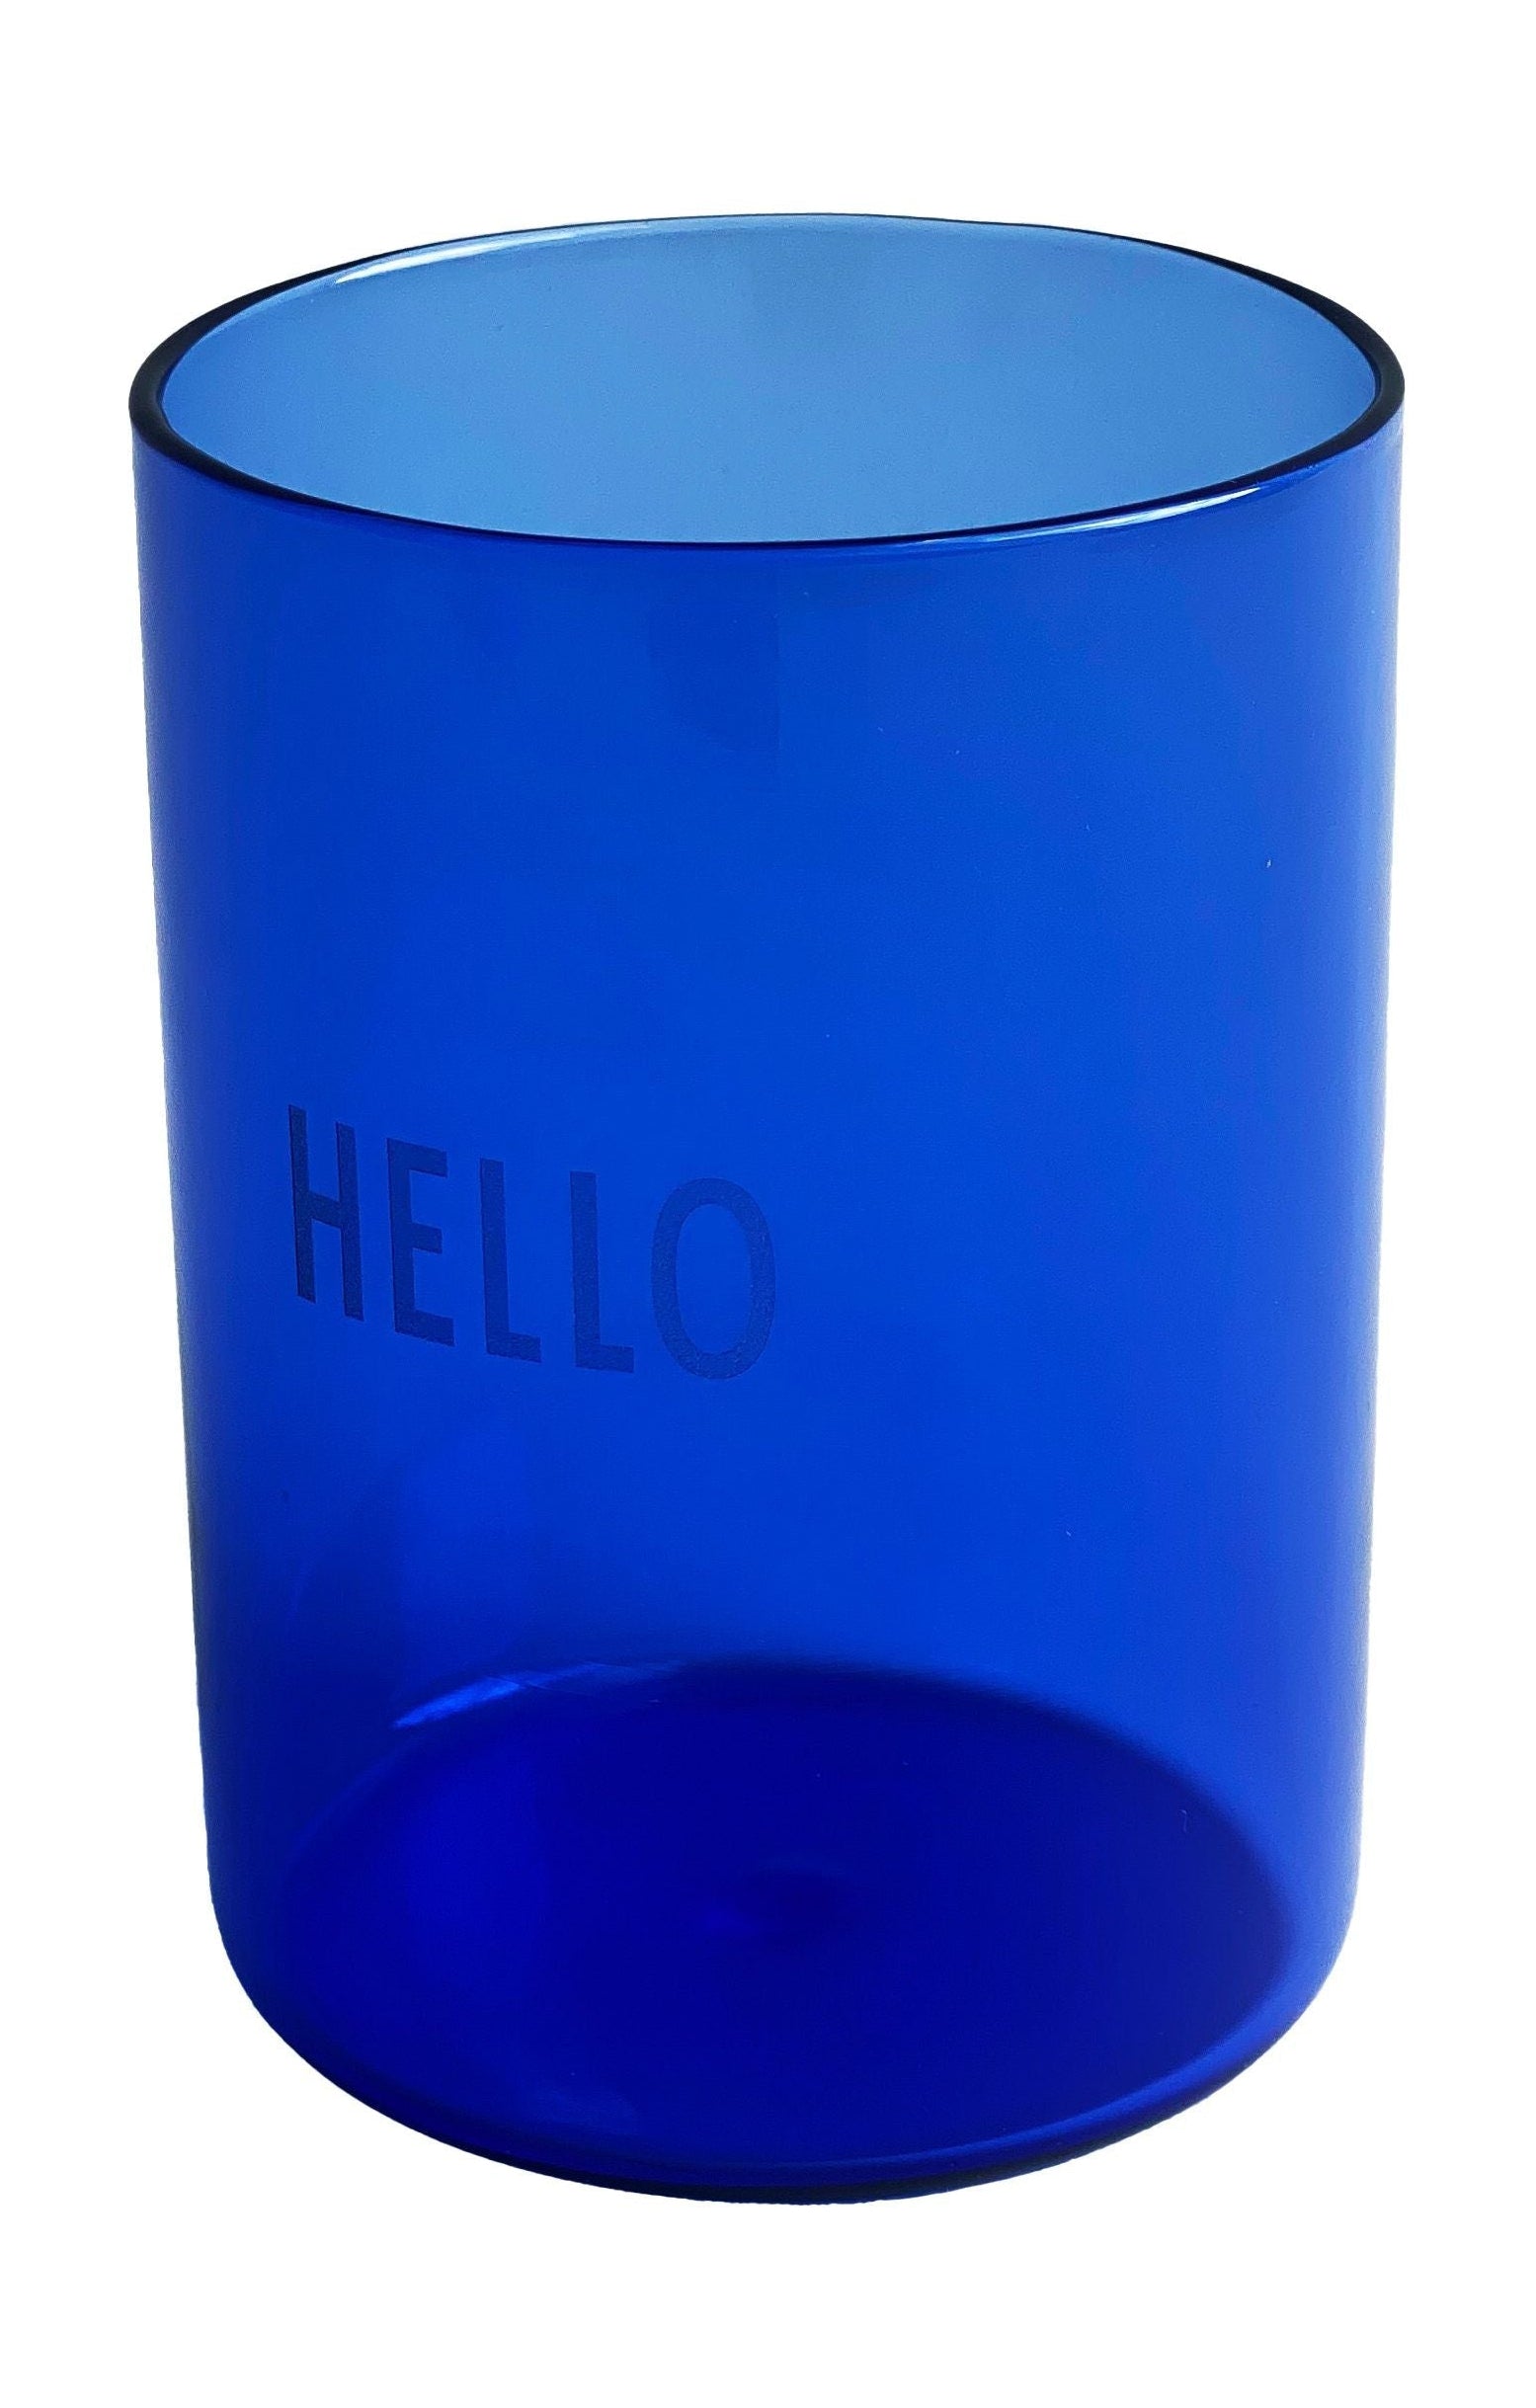 Il vetro da bere preferito della lettera di design ciao, blu